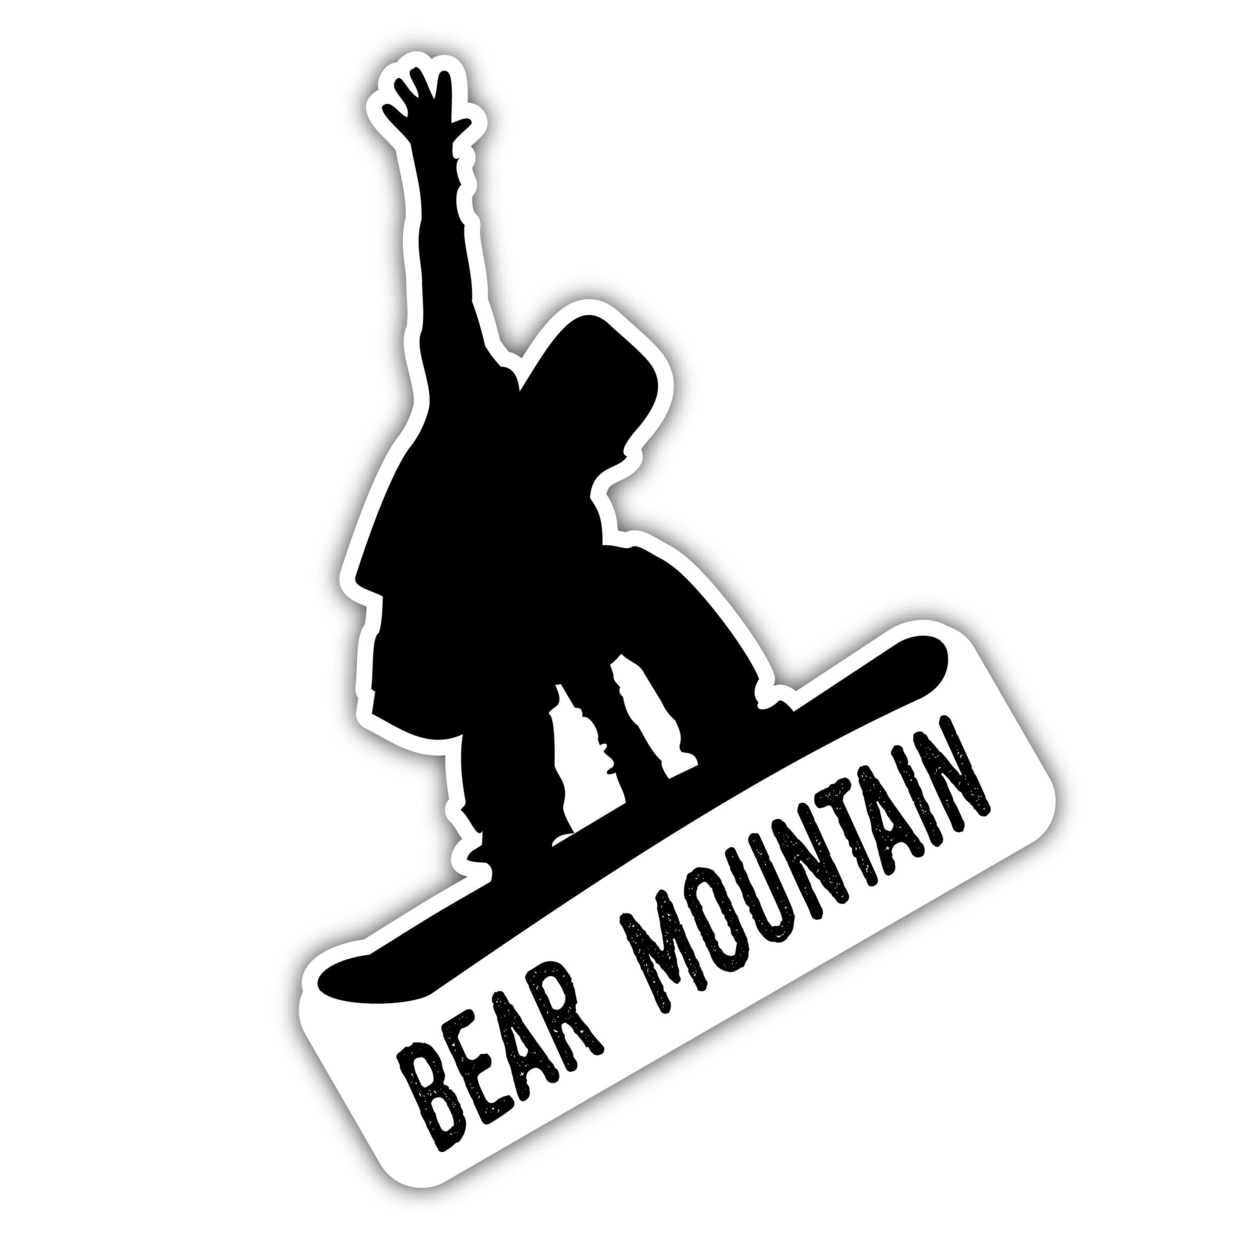 Bear Mountain California Ski Adventures Souvenir 4 Inch Vinyl Decal Sticker Board Design